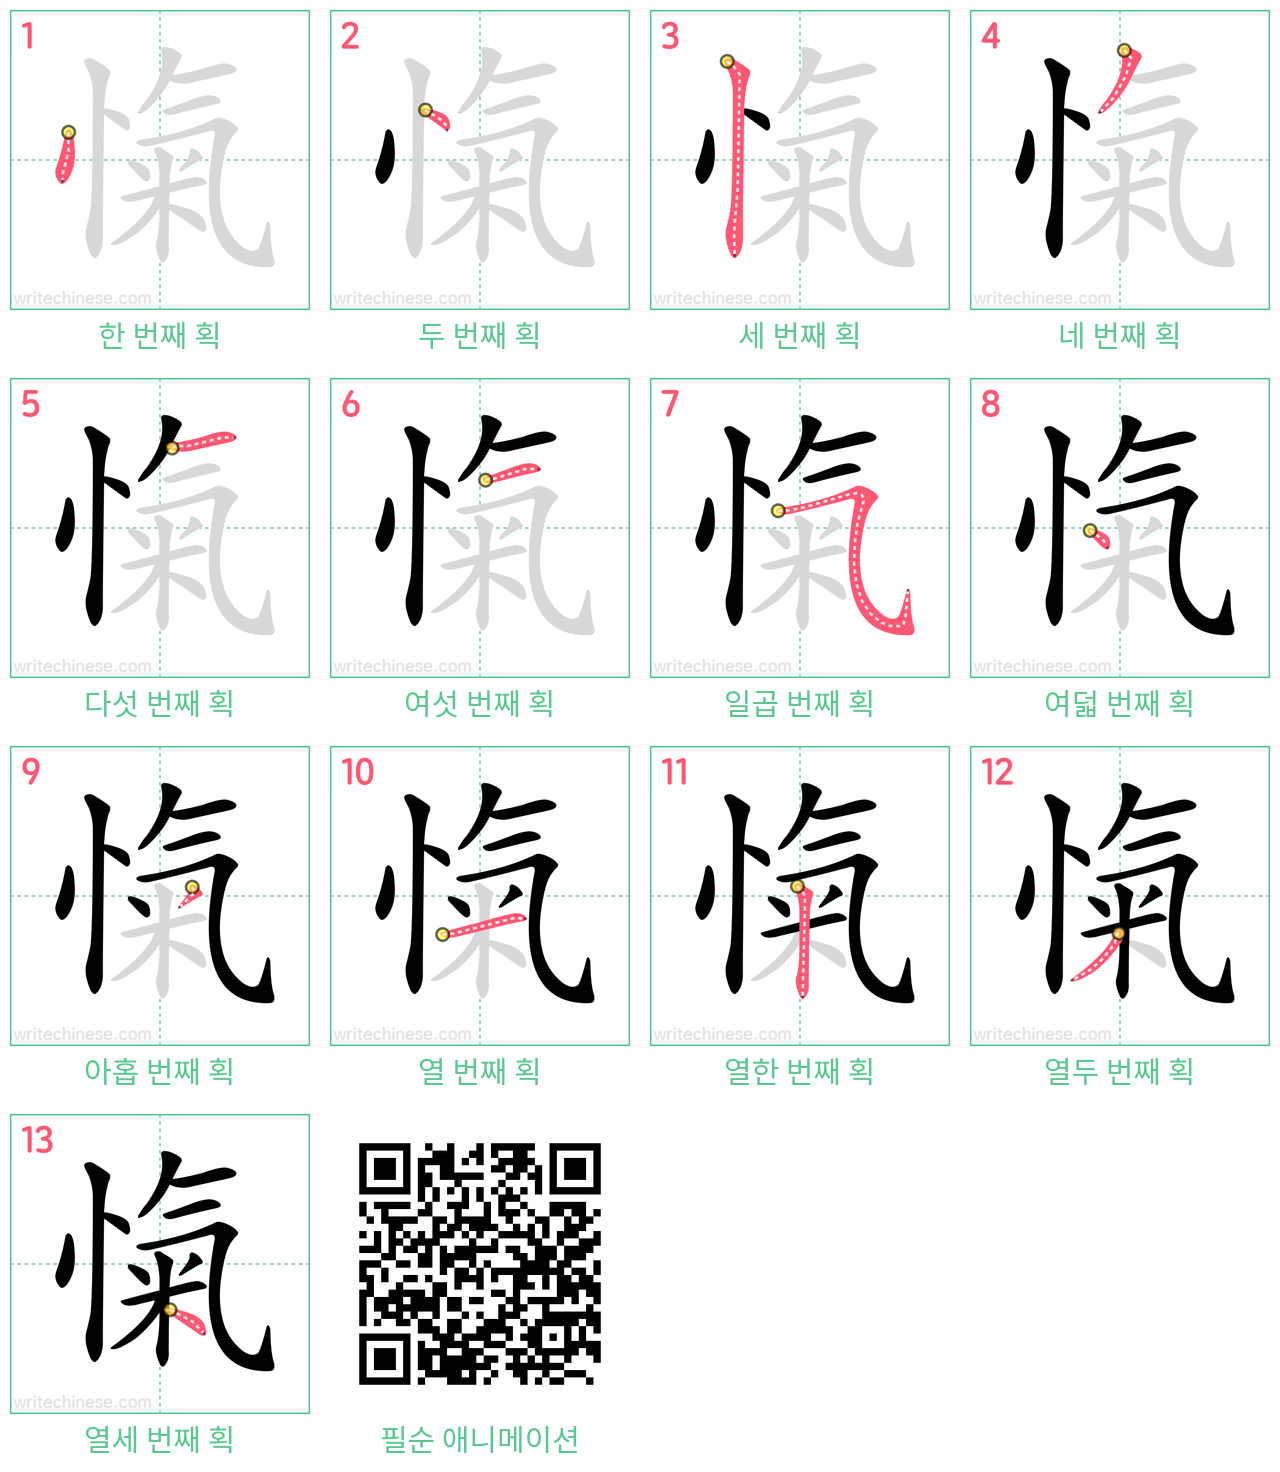 愾 step-by-step stroke order diagrams